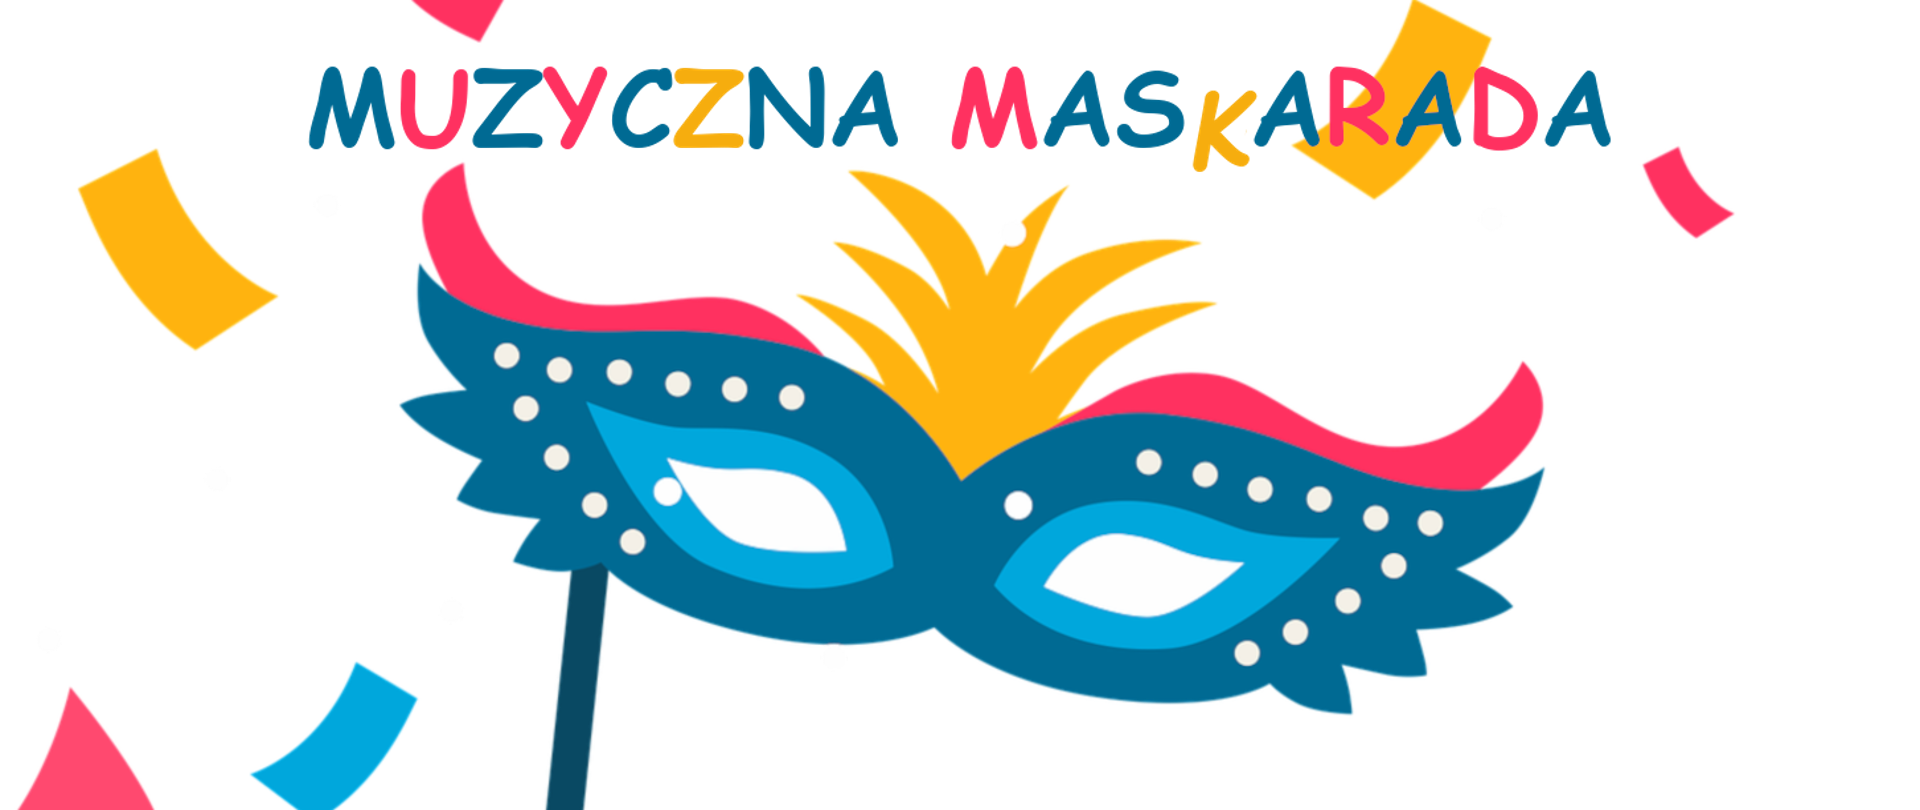 grafika przedstawia u góry na białym tle wielokolorowy napis muzyczna maskarada a poniżej niebiesko-różową wenecką maskę karnawałową ustrojoną u góry żółtym piórem